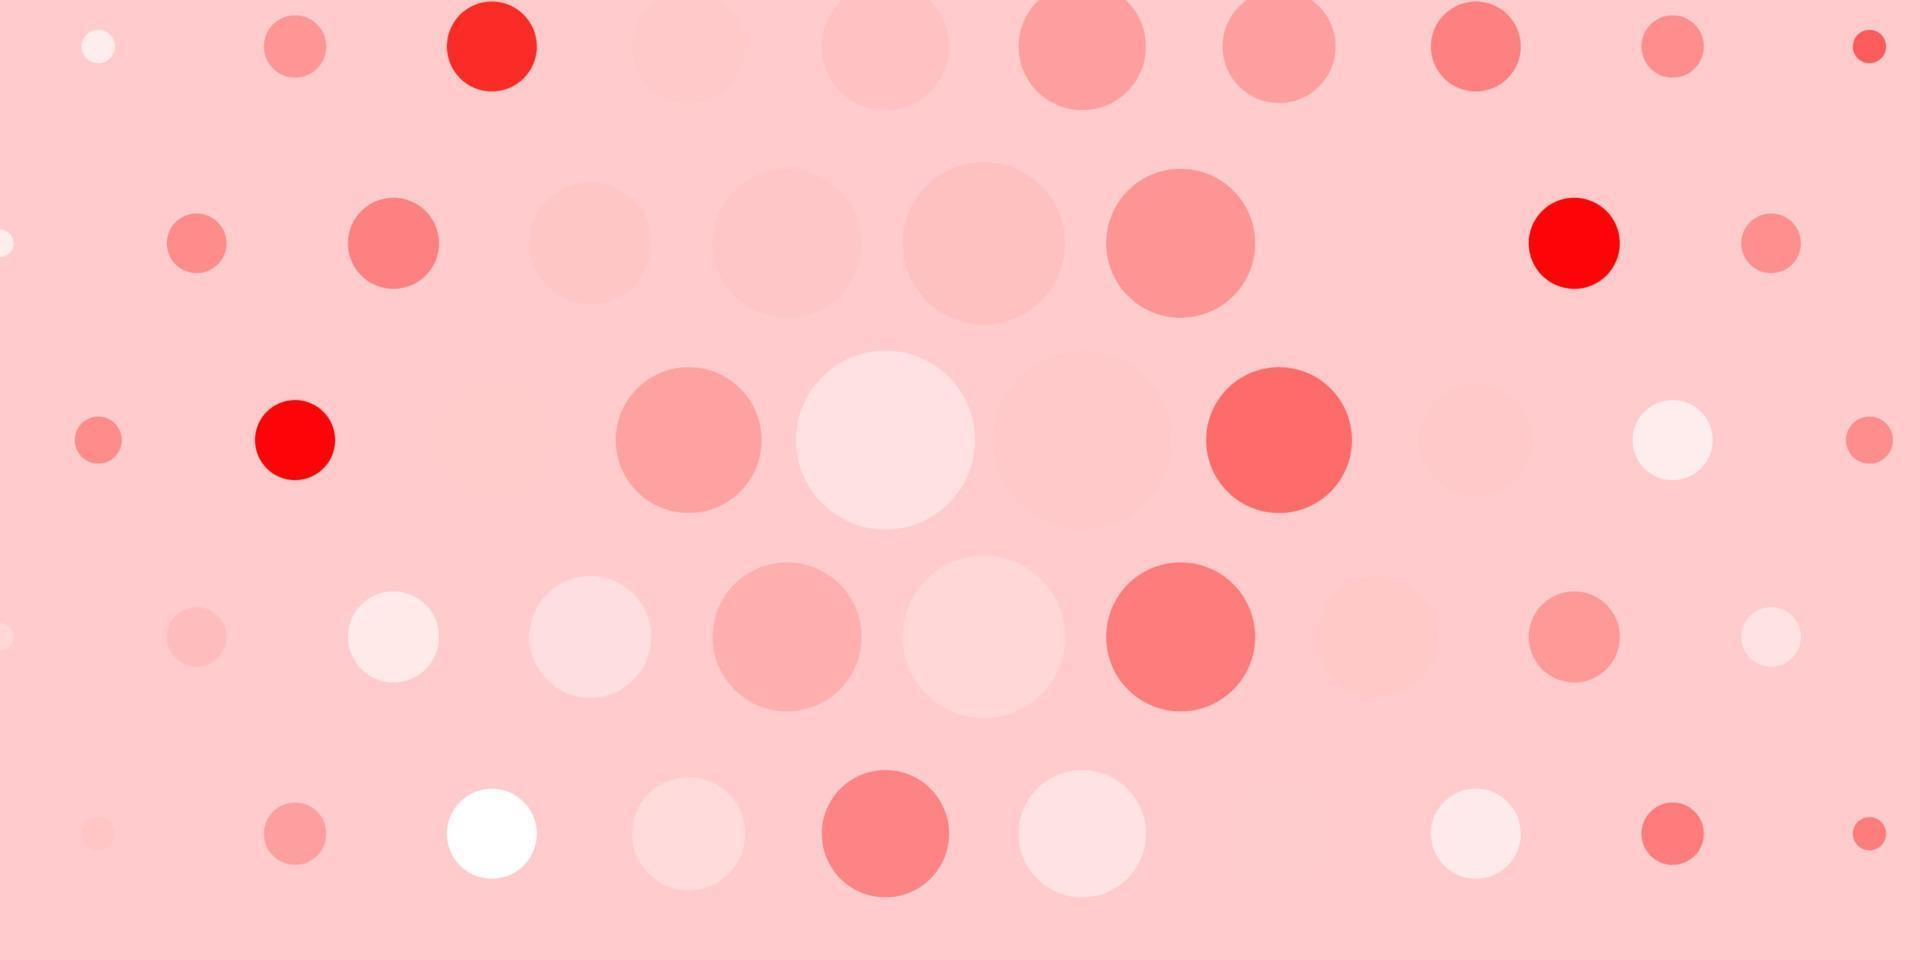 Fondo de vector rojo claro con círculos.